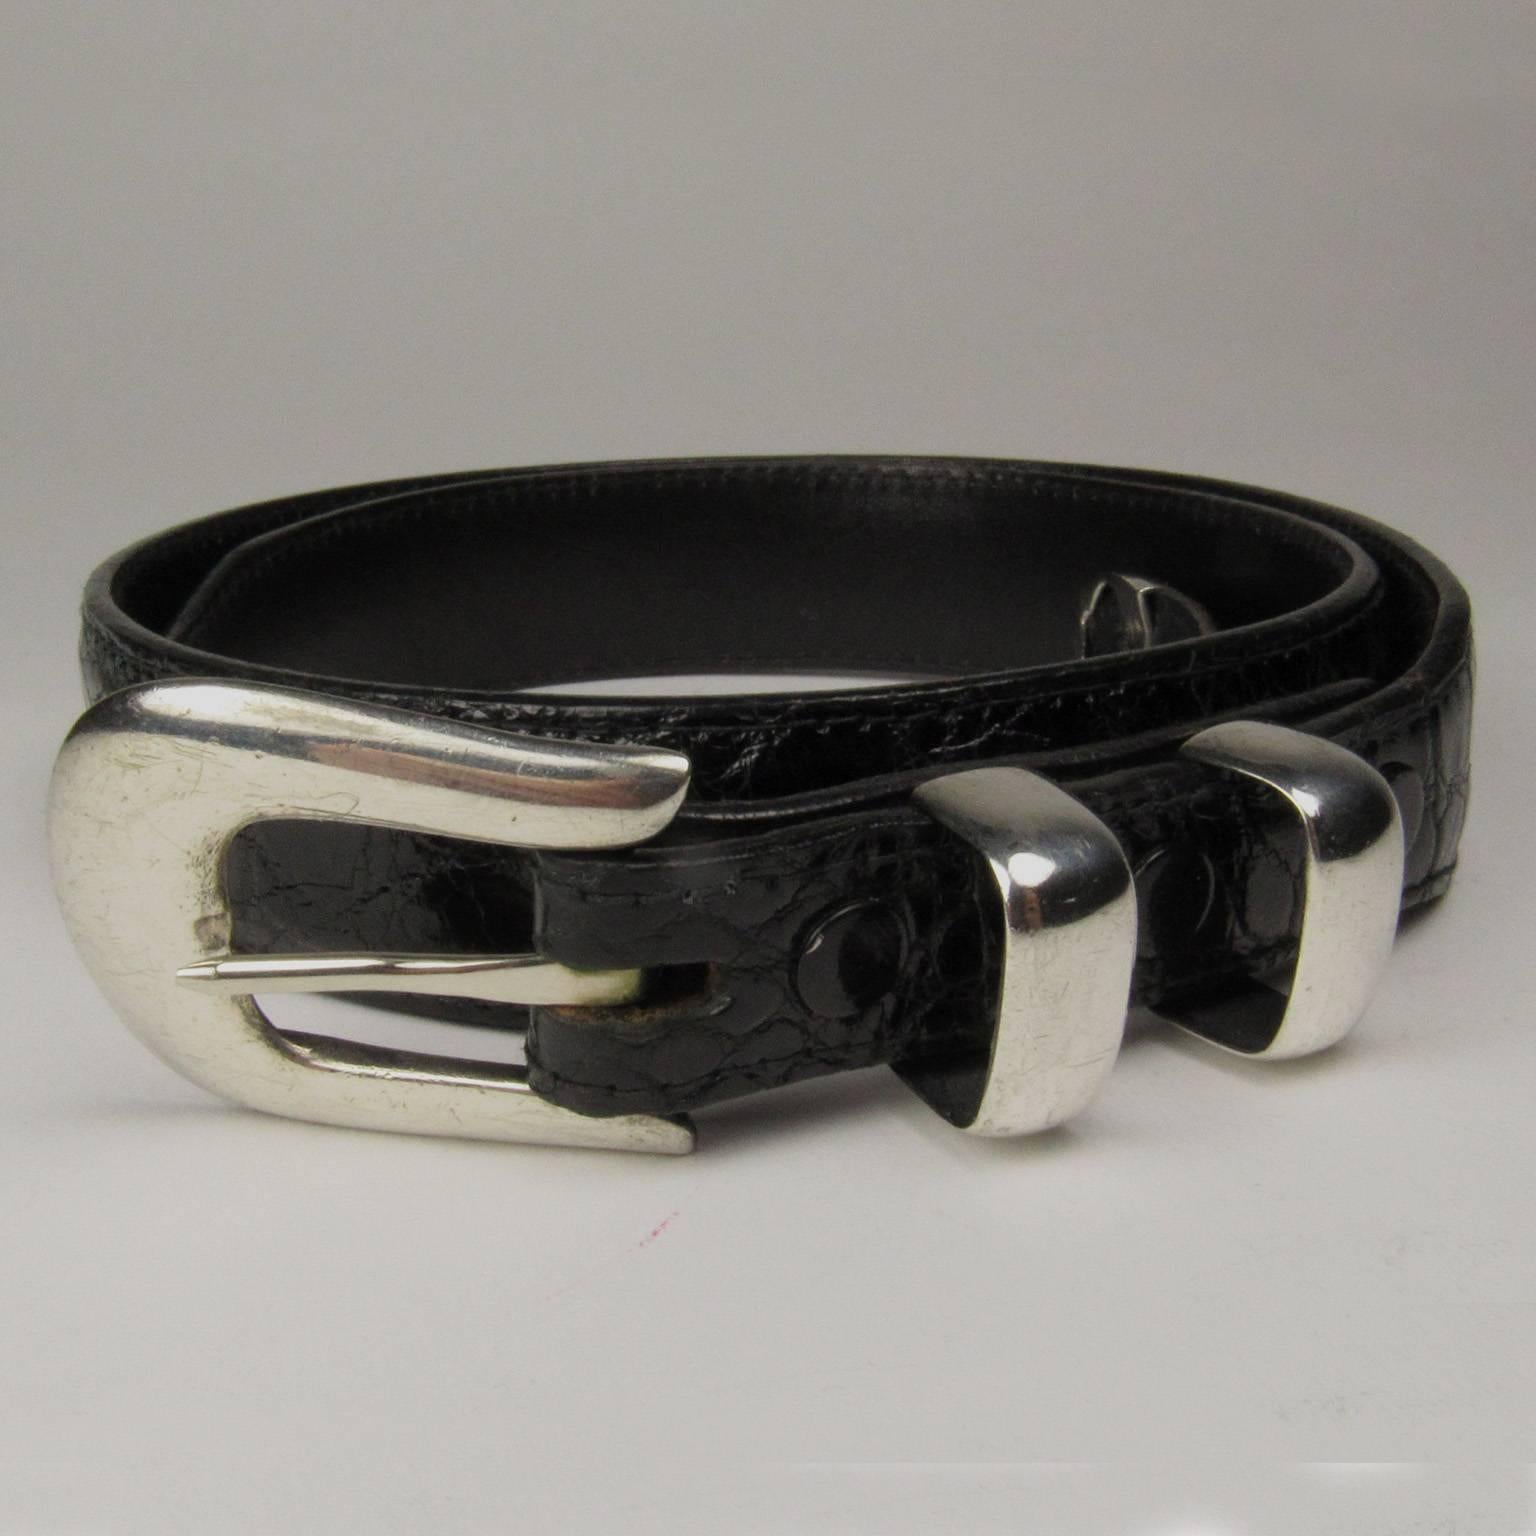 Billy Martin black alligator leather belt with Doug Magnus sterling silver buckle, belt marked 